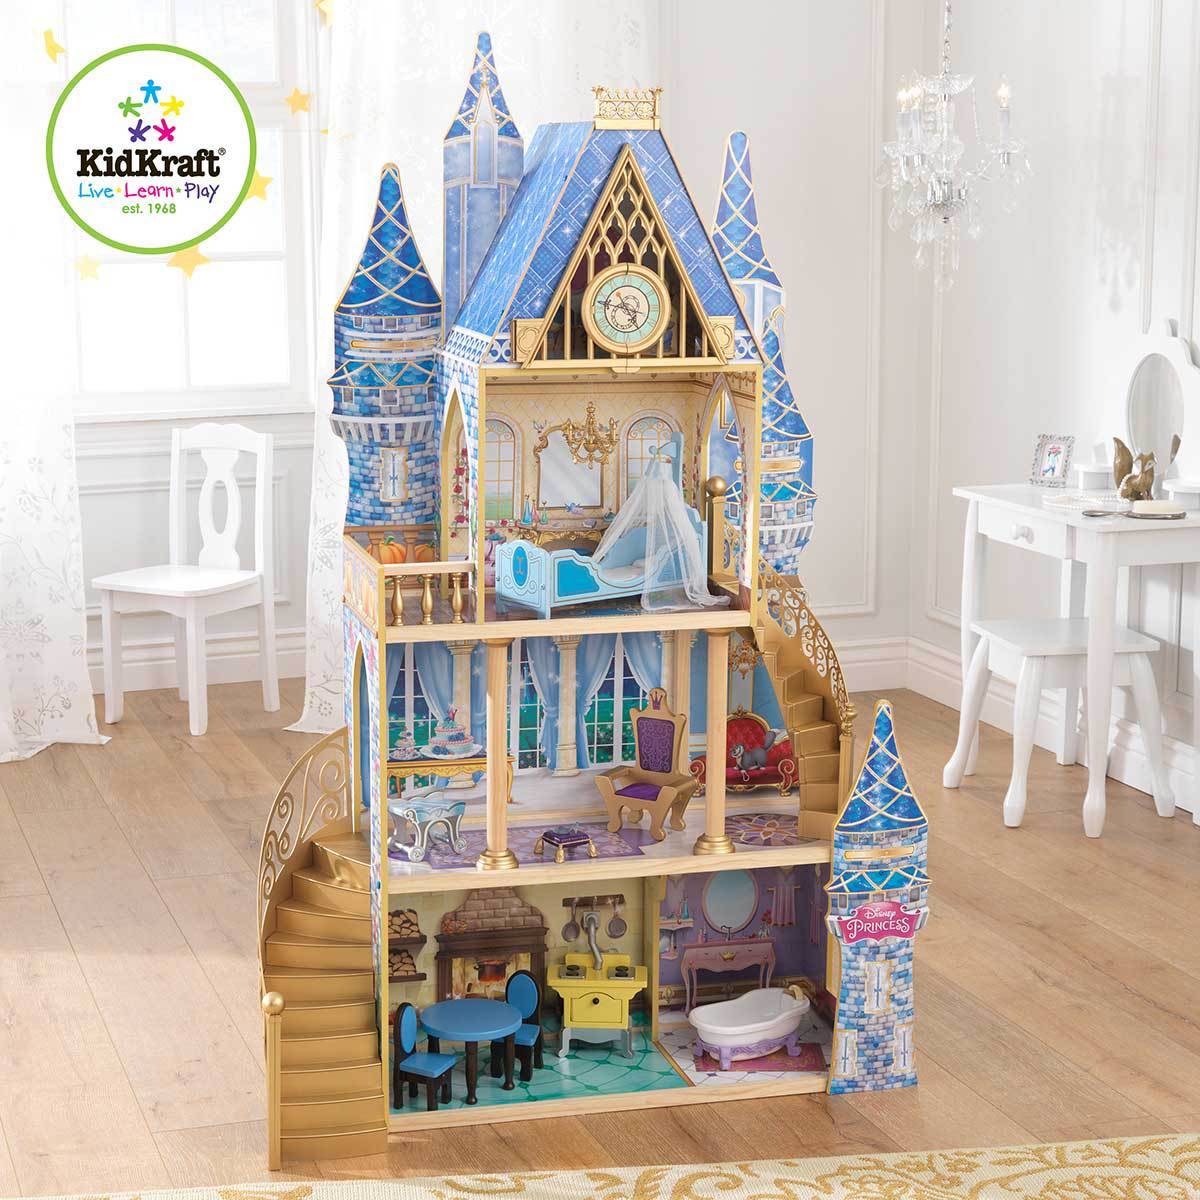 Maison de poupée - le château en bois